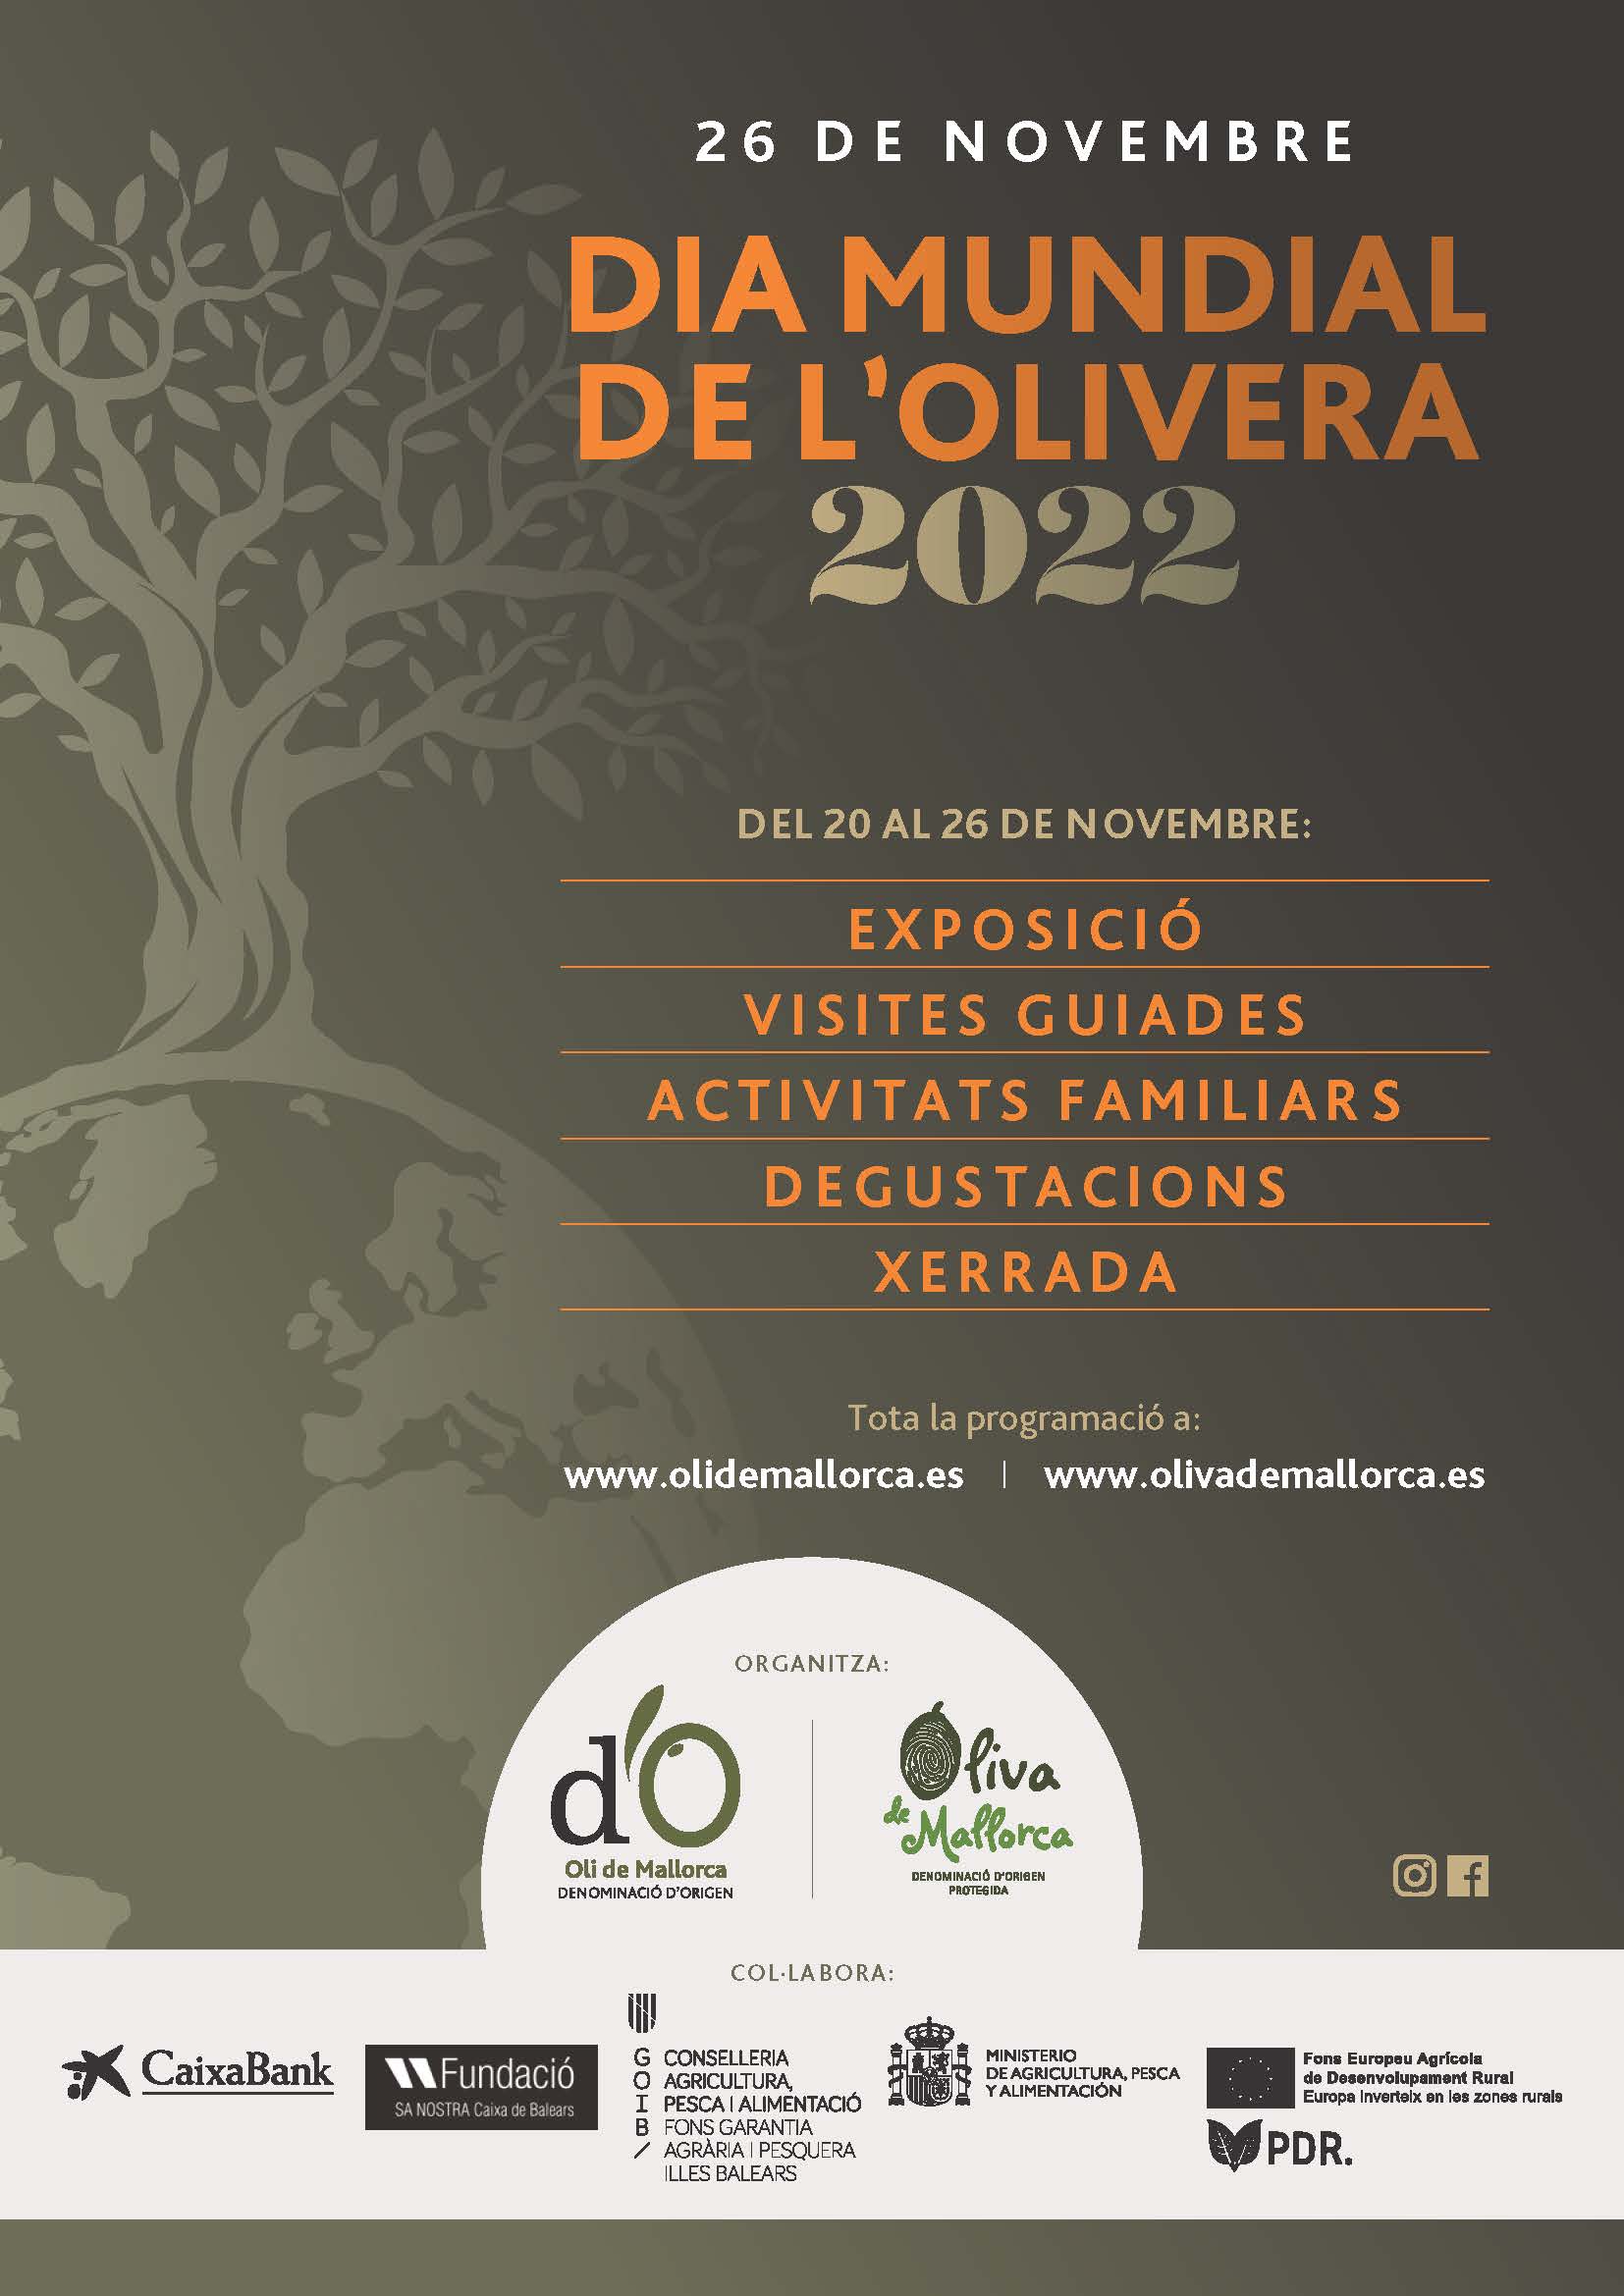 DIA MUNDIAL DE L’OLIVERA 2022 - Notícies - Illes Balears - Productes agroalimentaris, denominacions d'origen i gastronomia balear